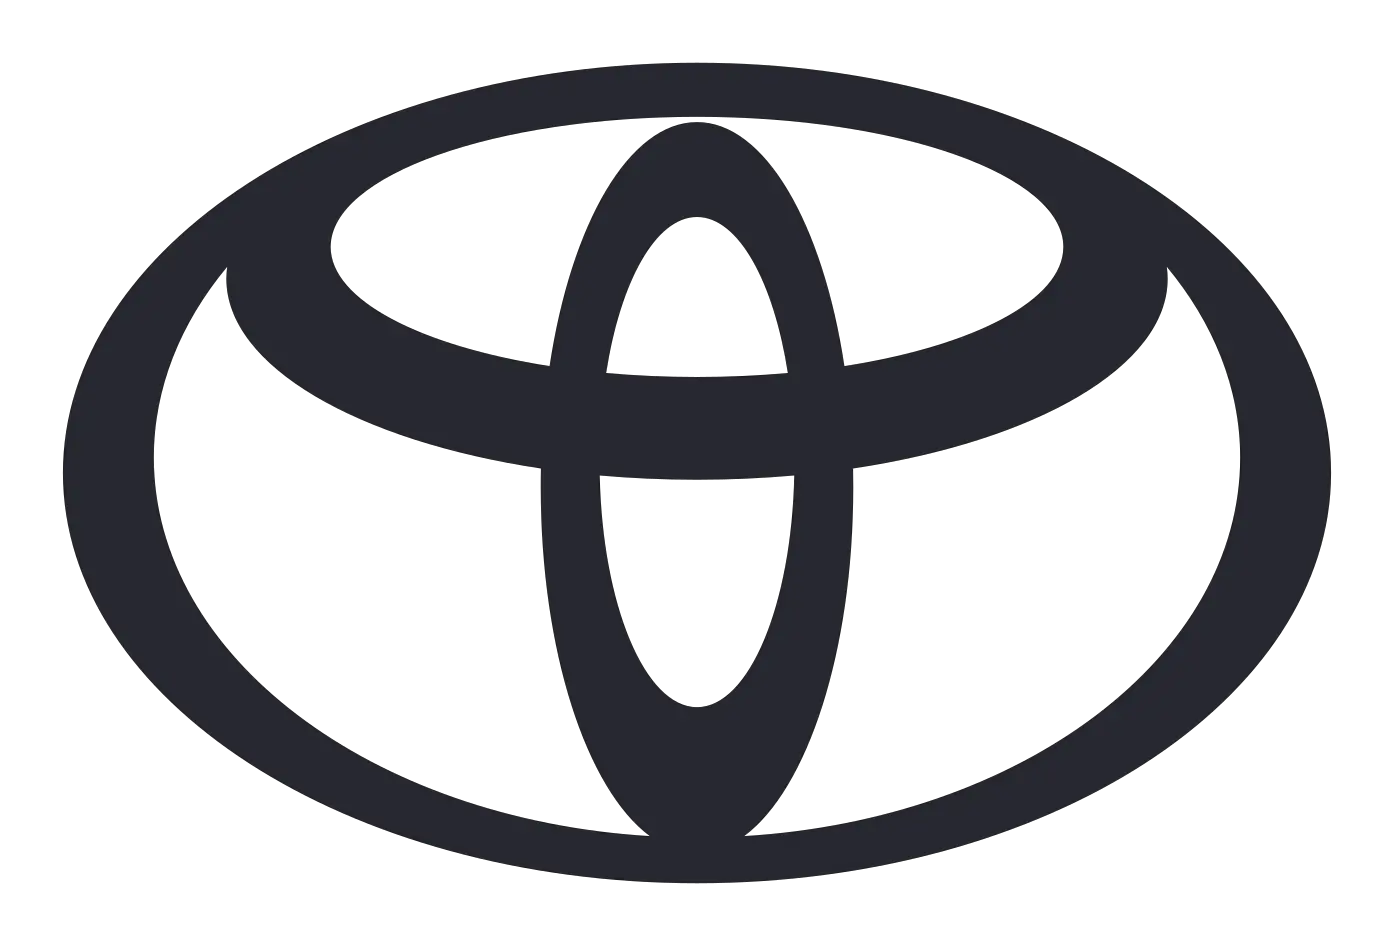 toyota logo 2020 europe download